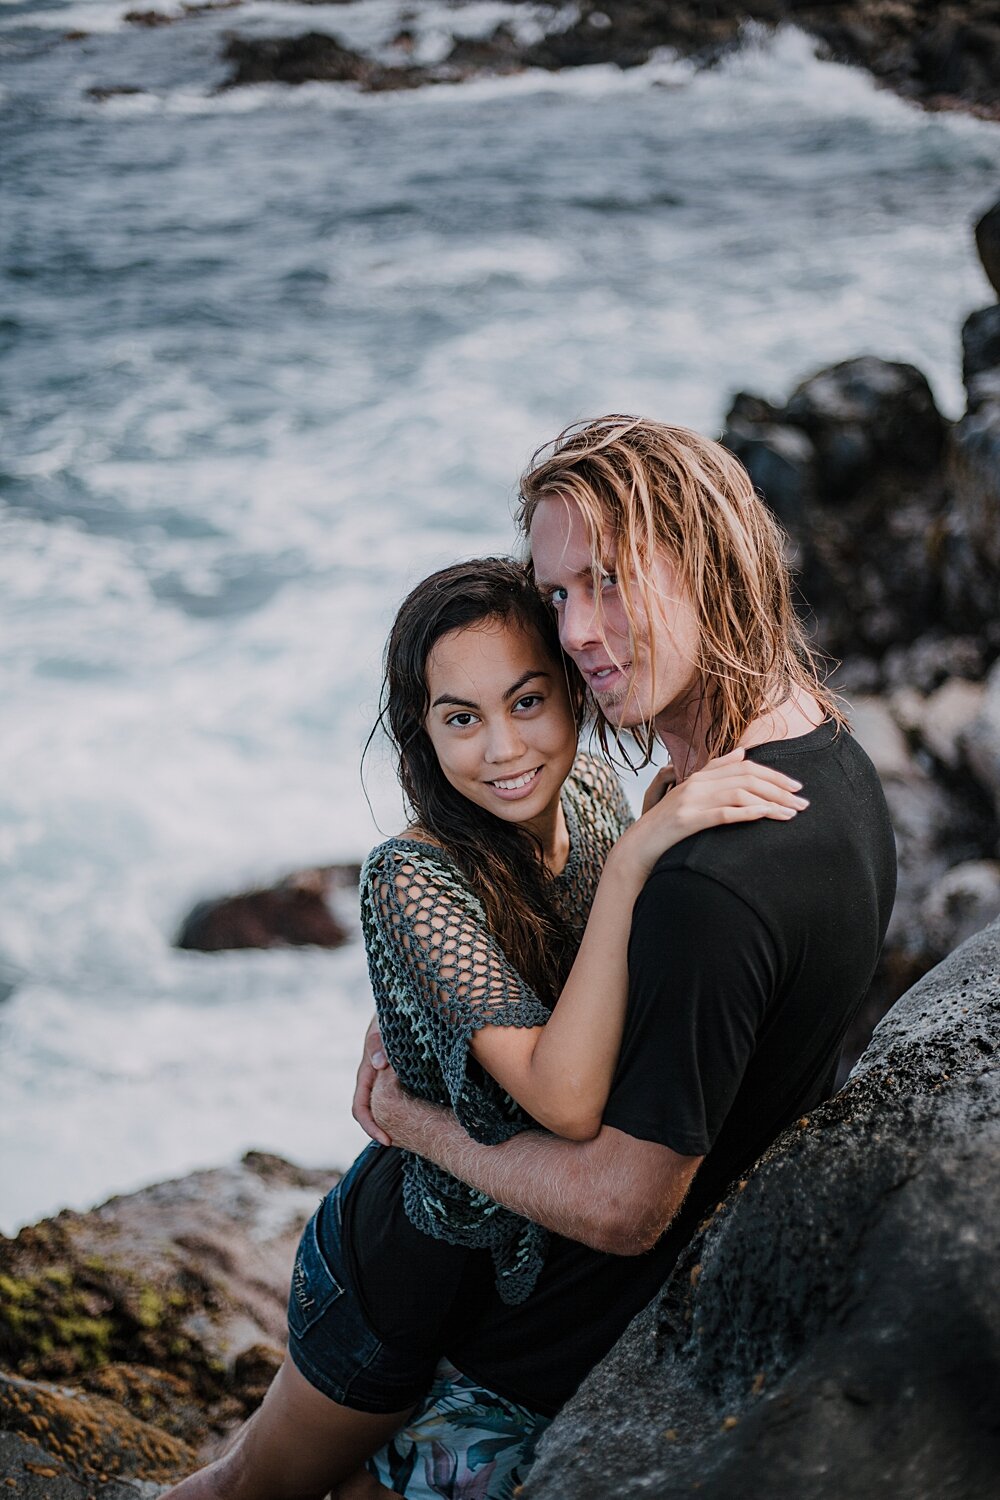 kissing on volcanic lava rocks on ho'okipa beach, couple hiking ho'okipa, maui hawaii photographer, maui hawaii surfing, surfing at ho'okipa beach, ho'okipa beach engagements, motorcycle engagements